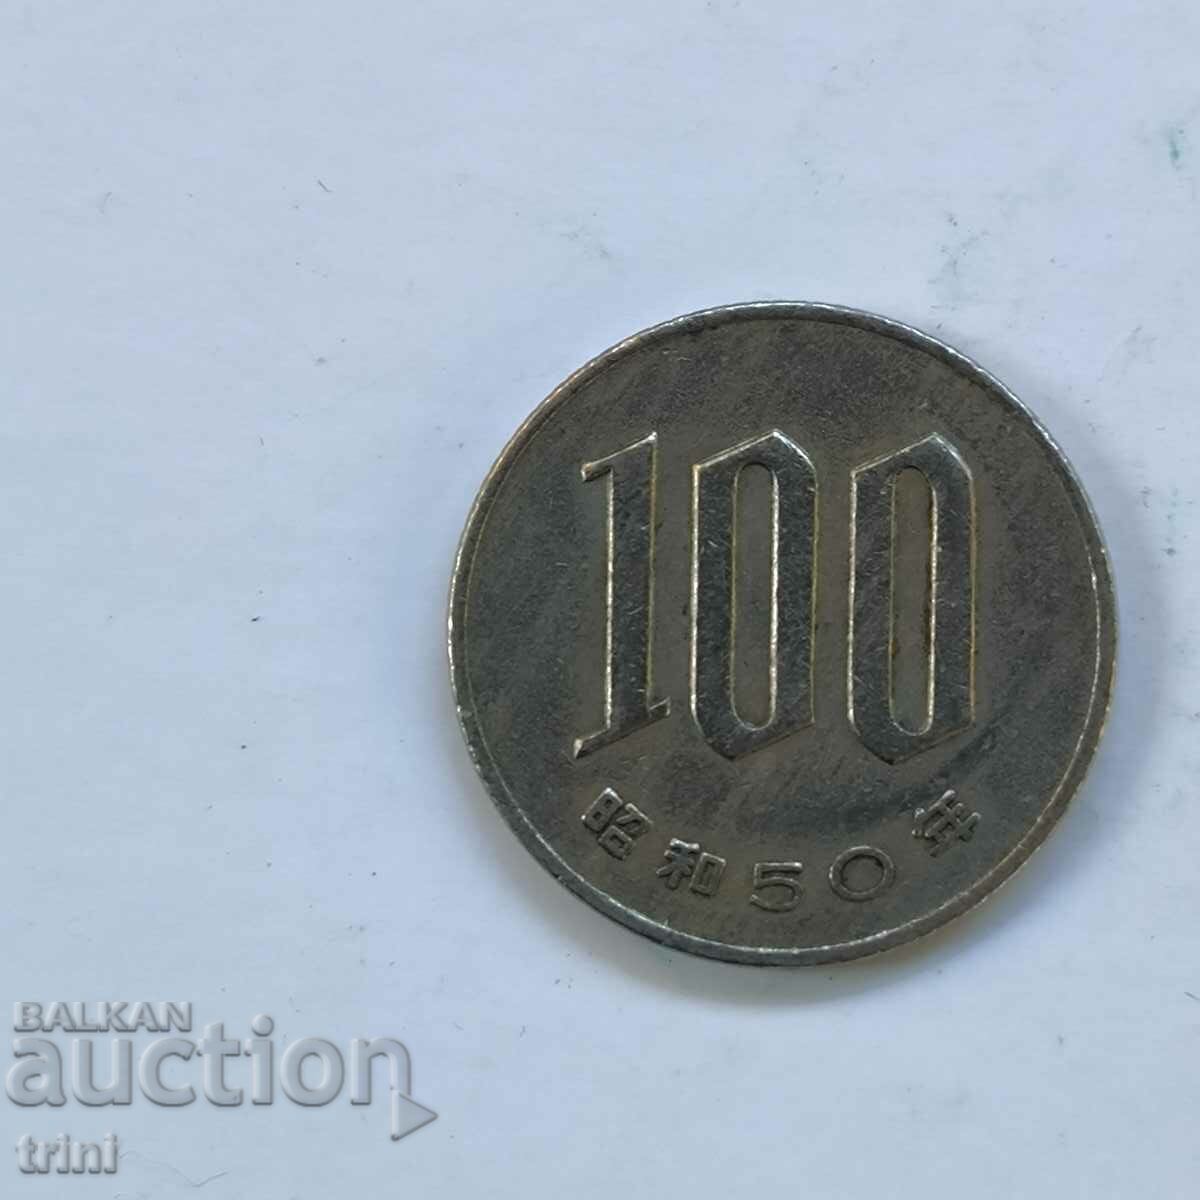 Ιαπωνία 100 γεν 1975